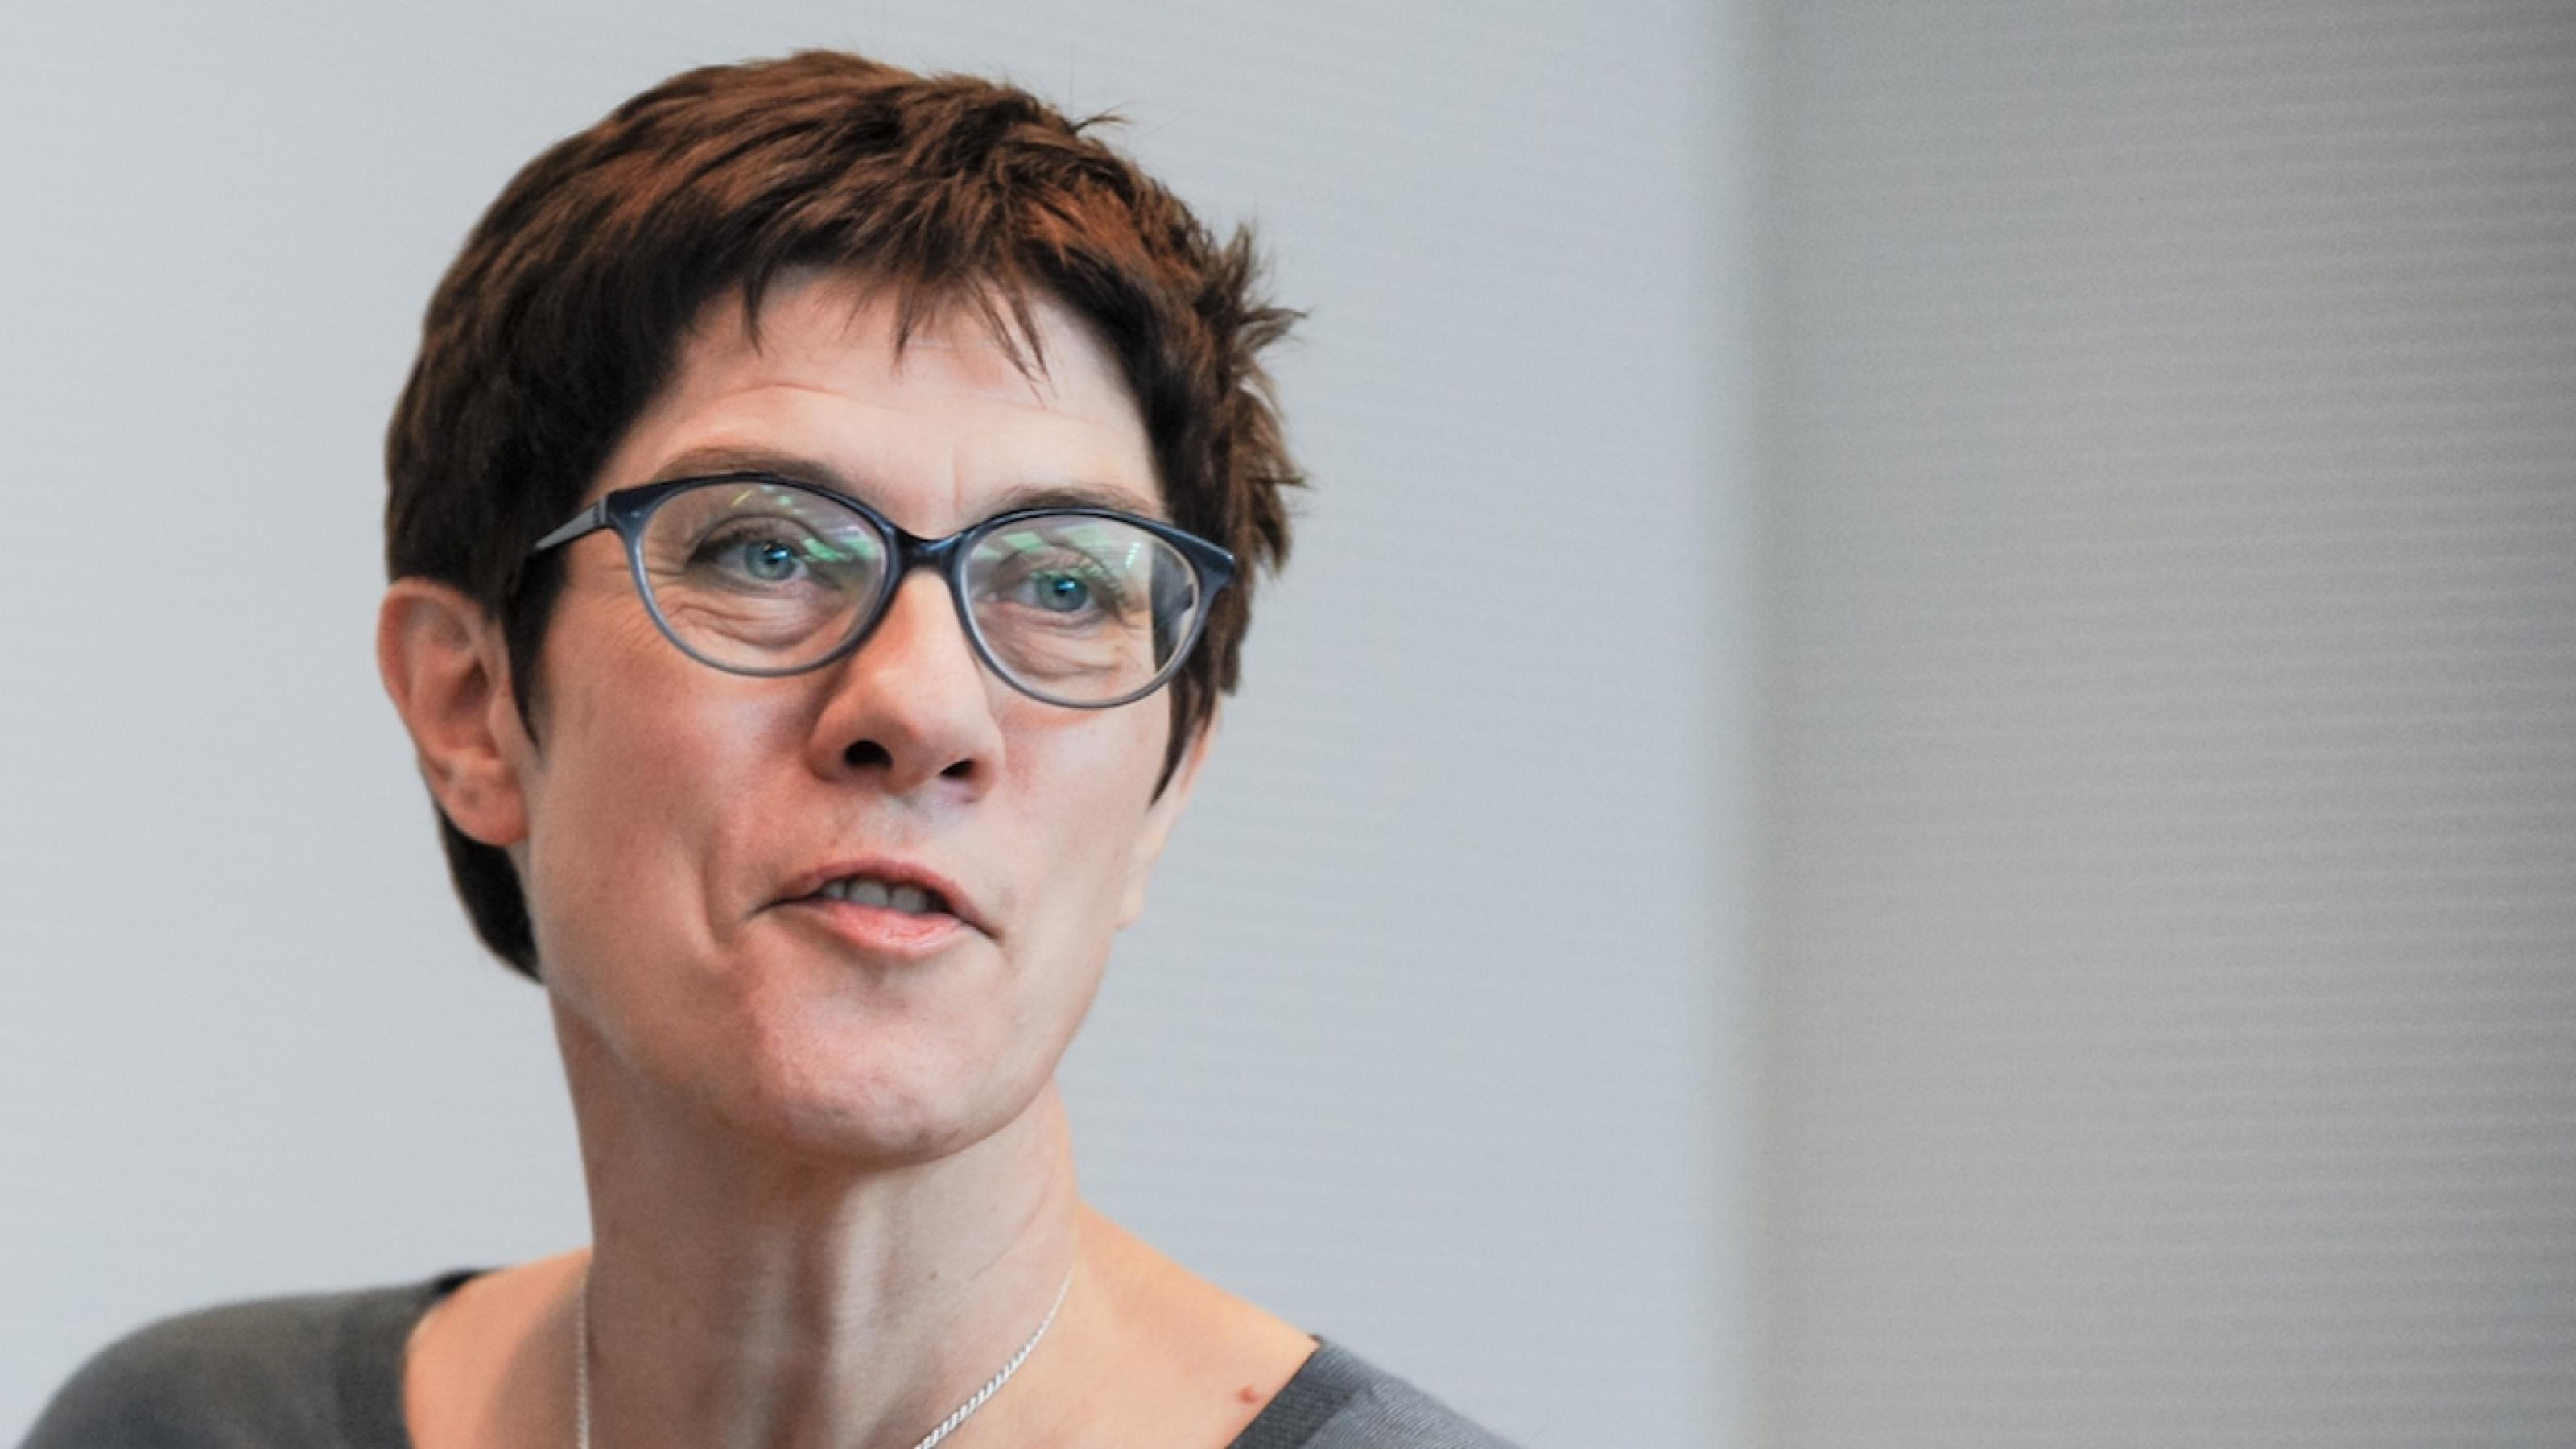 CDU-Vorsitzende Annegret Kramp-Karrenbauer. Eine Frau mit Brille und kurzen Haaren vor einer weißen Wand.